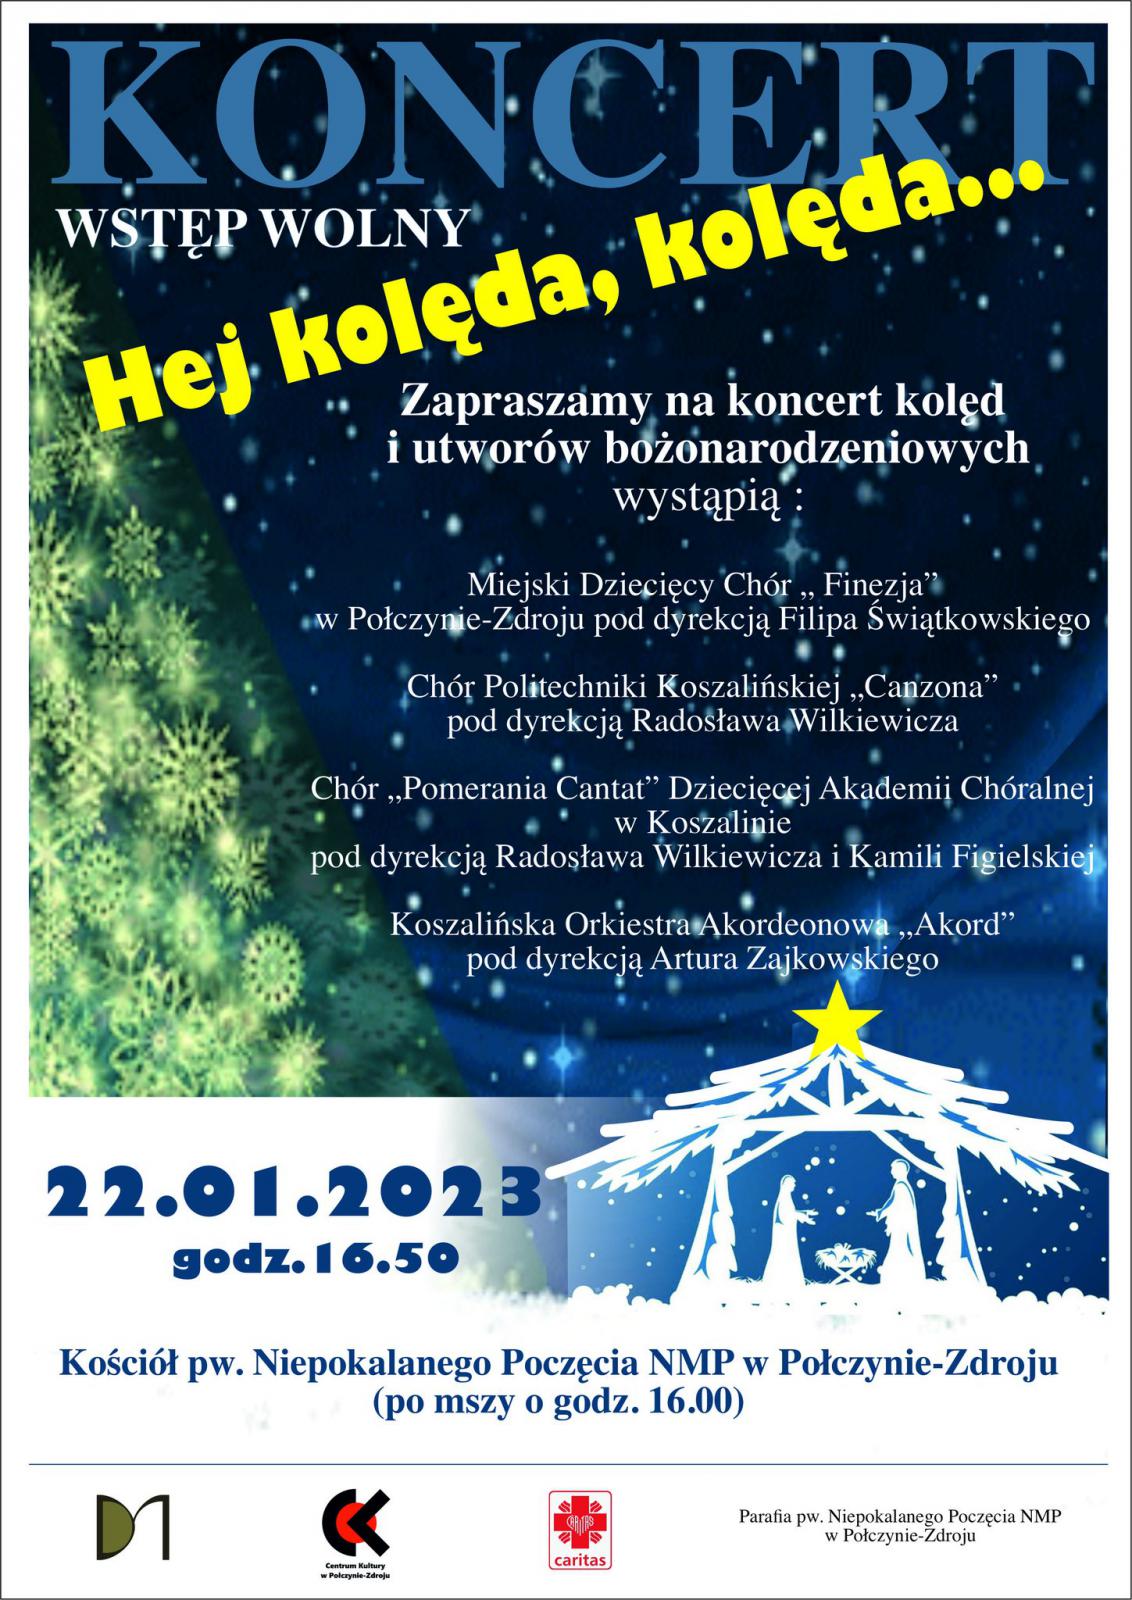 Koncert "Hej kolęda, kolęda..." w Połczynie-Zdroju - plakat